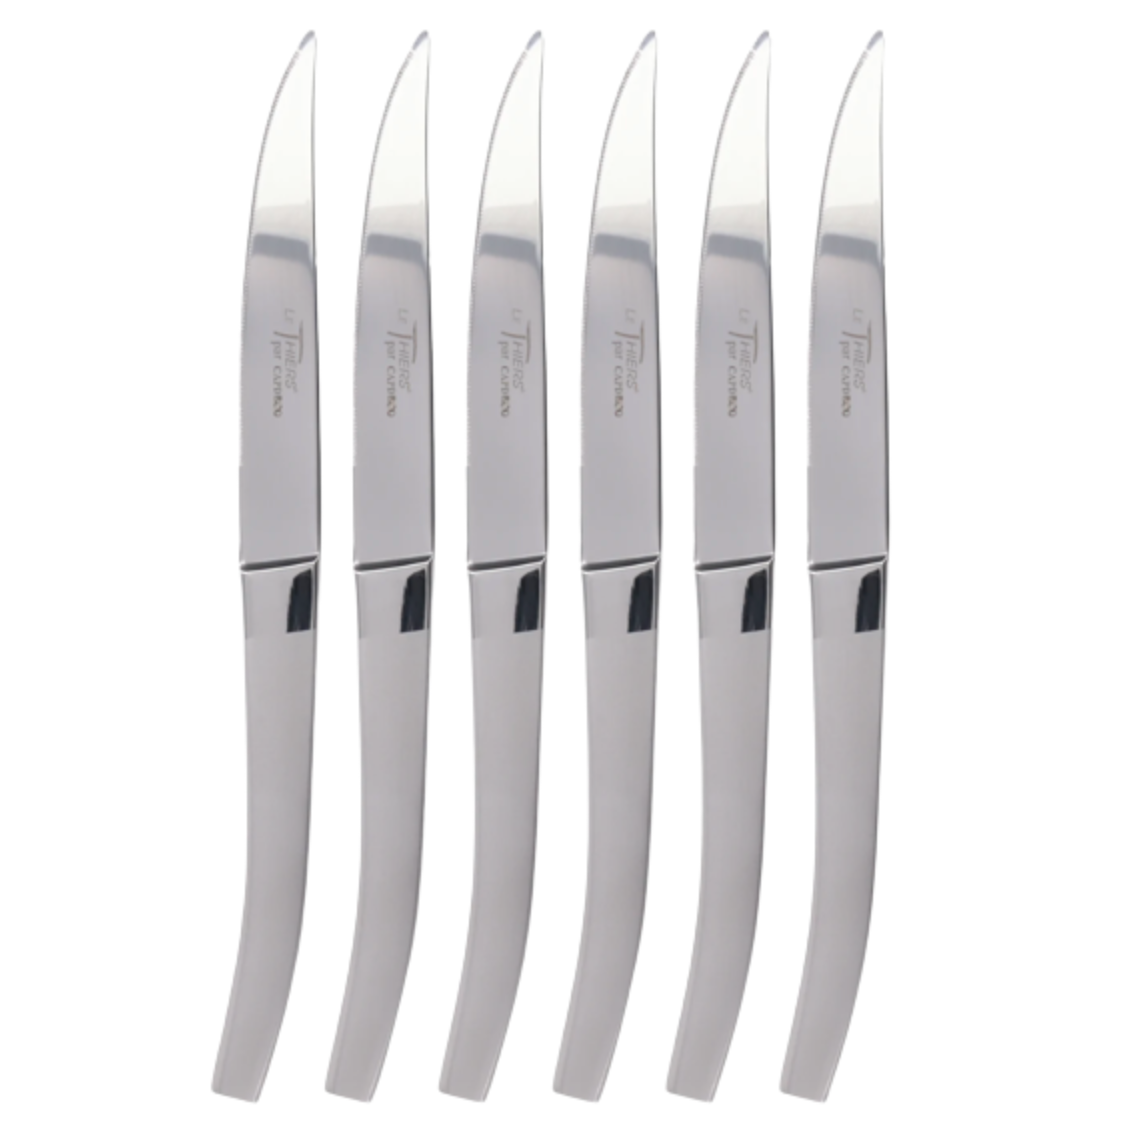 Stainless Steel Steak Knives Set of 6